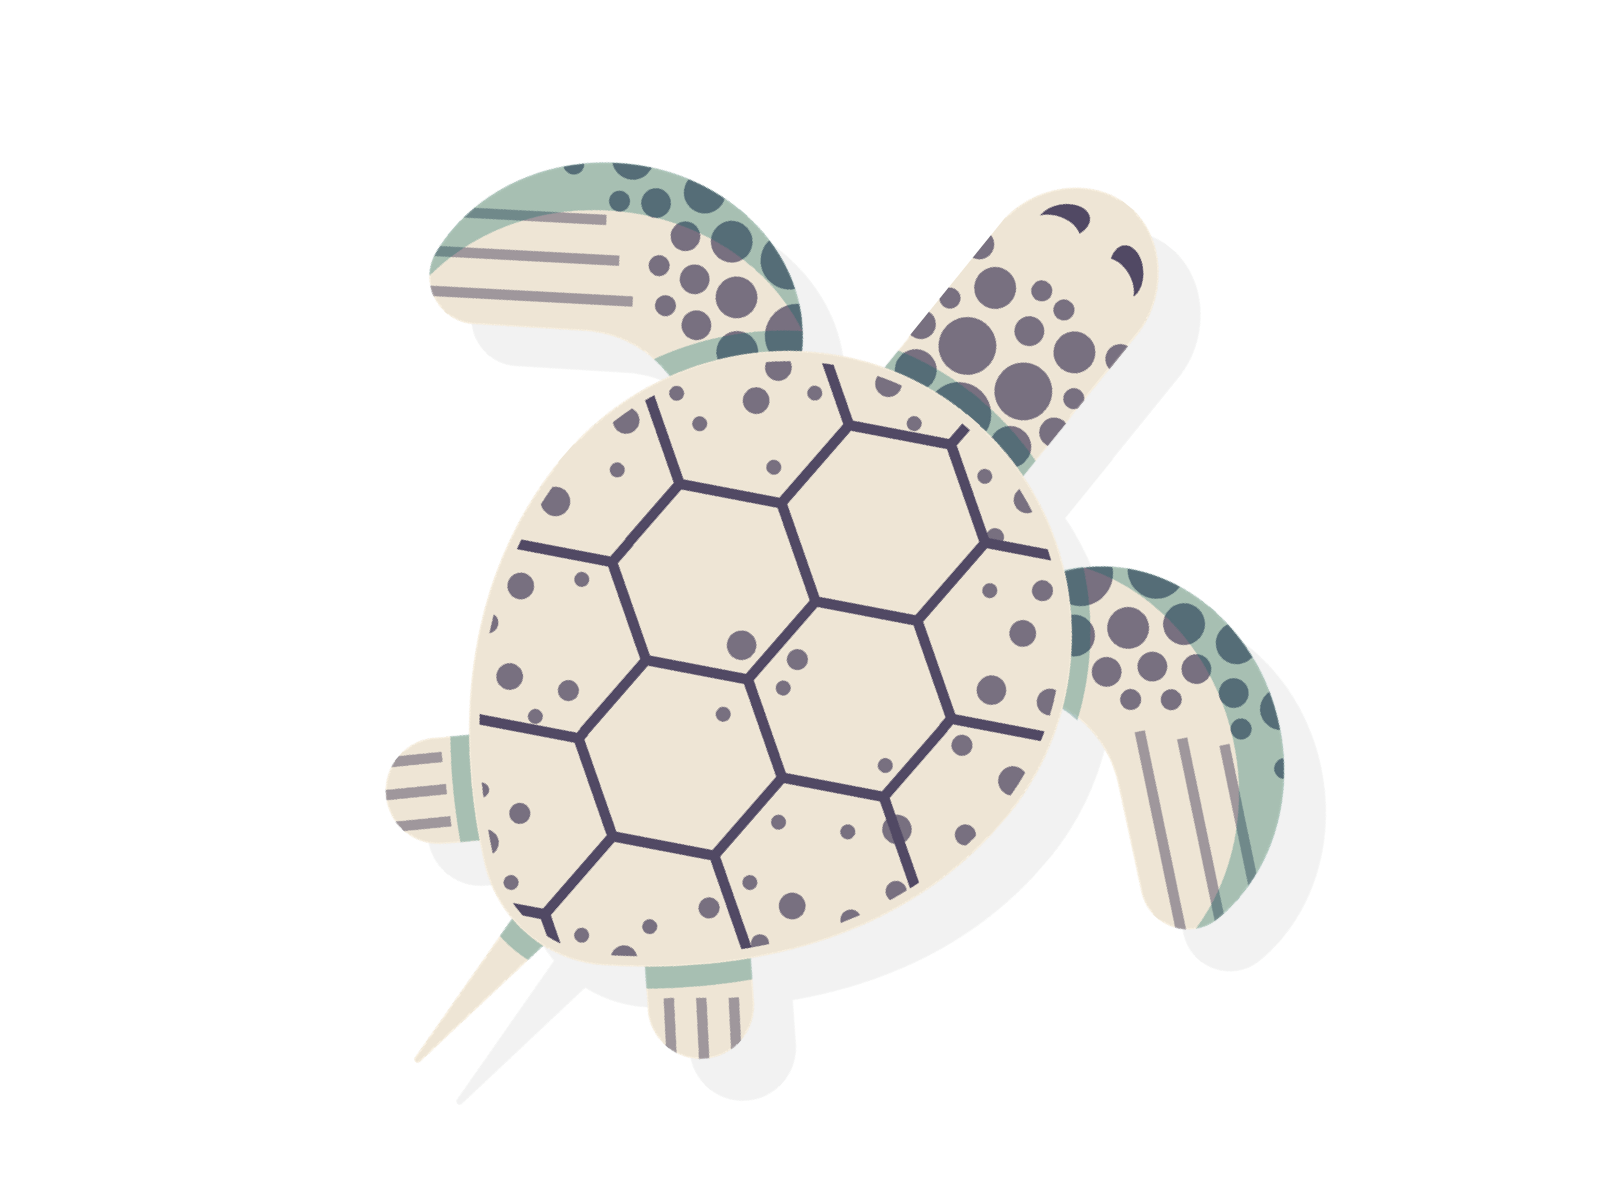 Tank the Turtle animation aquarium atlanta design digital georgia gif illustration minimal sea turtle simple turtle vector